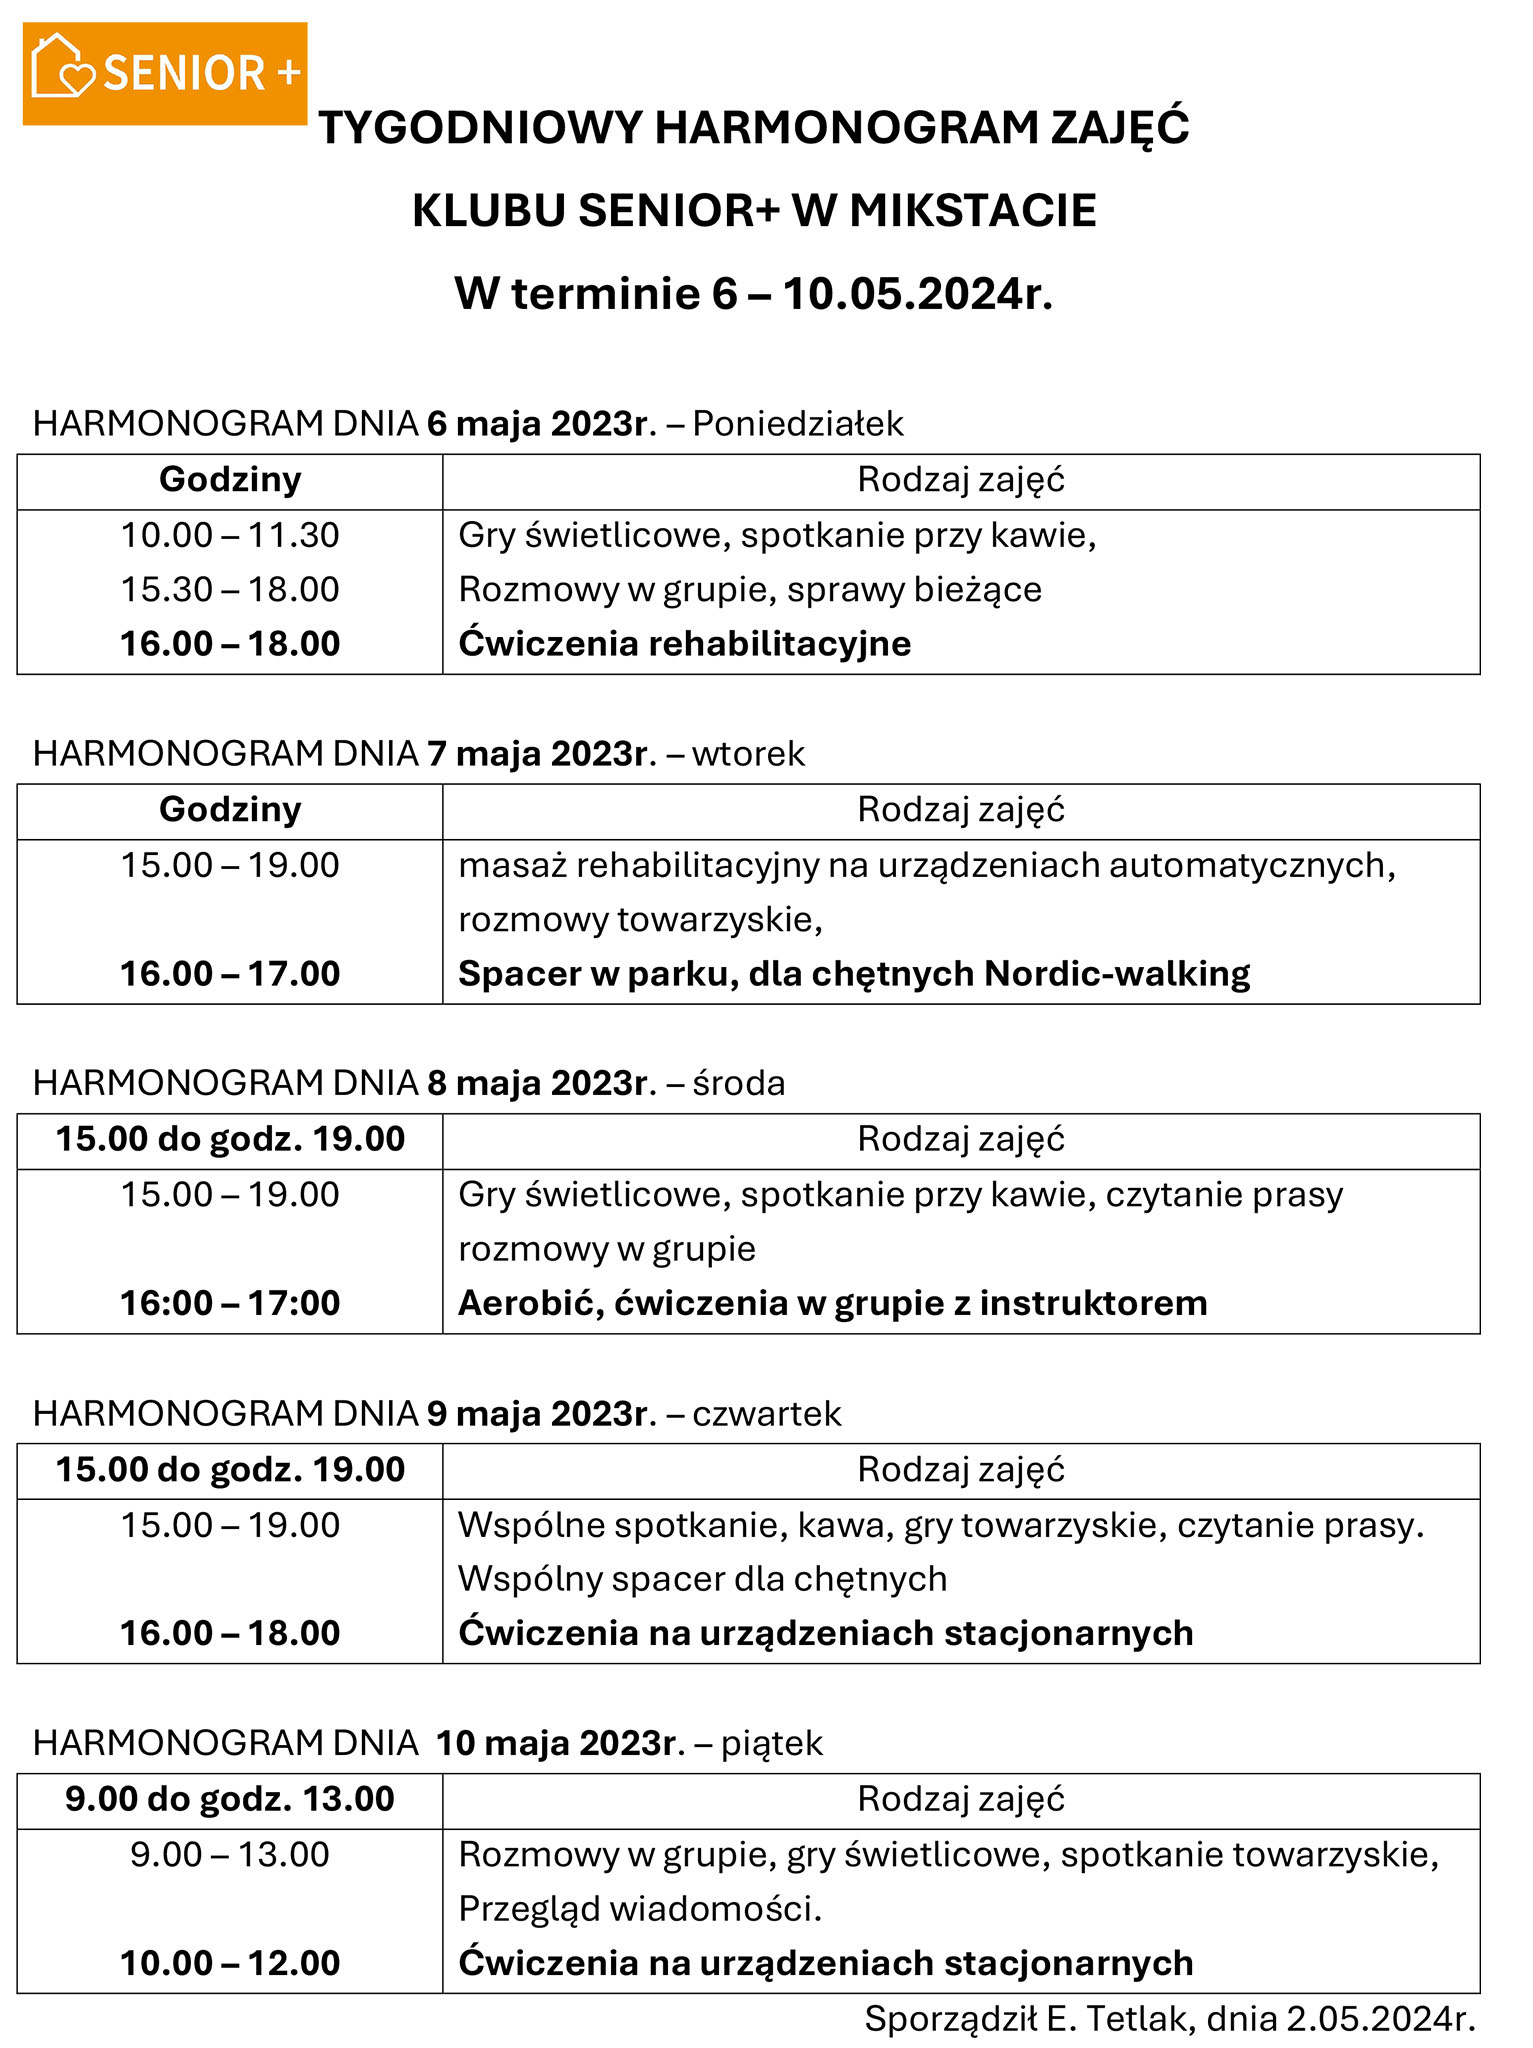 TYGODNIOWY HARMONOGRAM ZAJĘĆ  
KLUBU SENIOR+ W MIKSTACIE 
W terminie 6 – 10.05.2024r. 